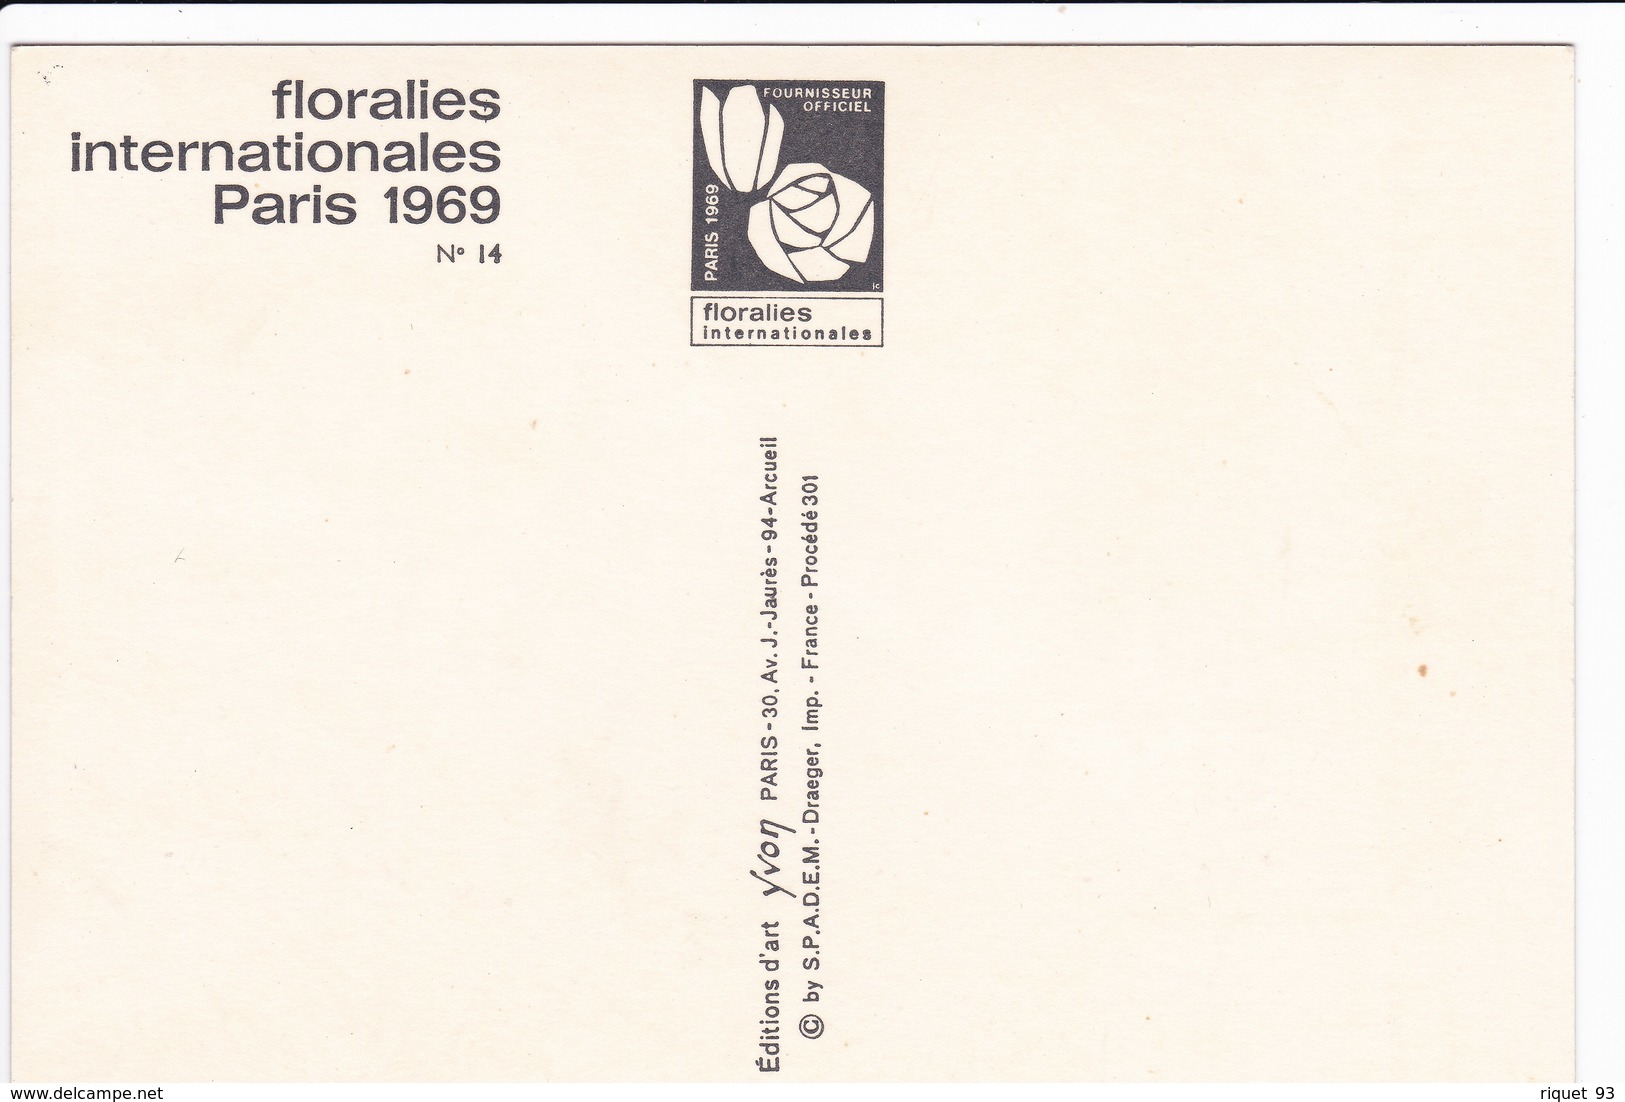 Lot 9 CPM FLORALIES INTERNATIONALES PARIS 1969 (Parc des Expo. Bois de Vincennes) dont 1cpm 1er jour